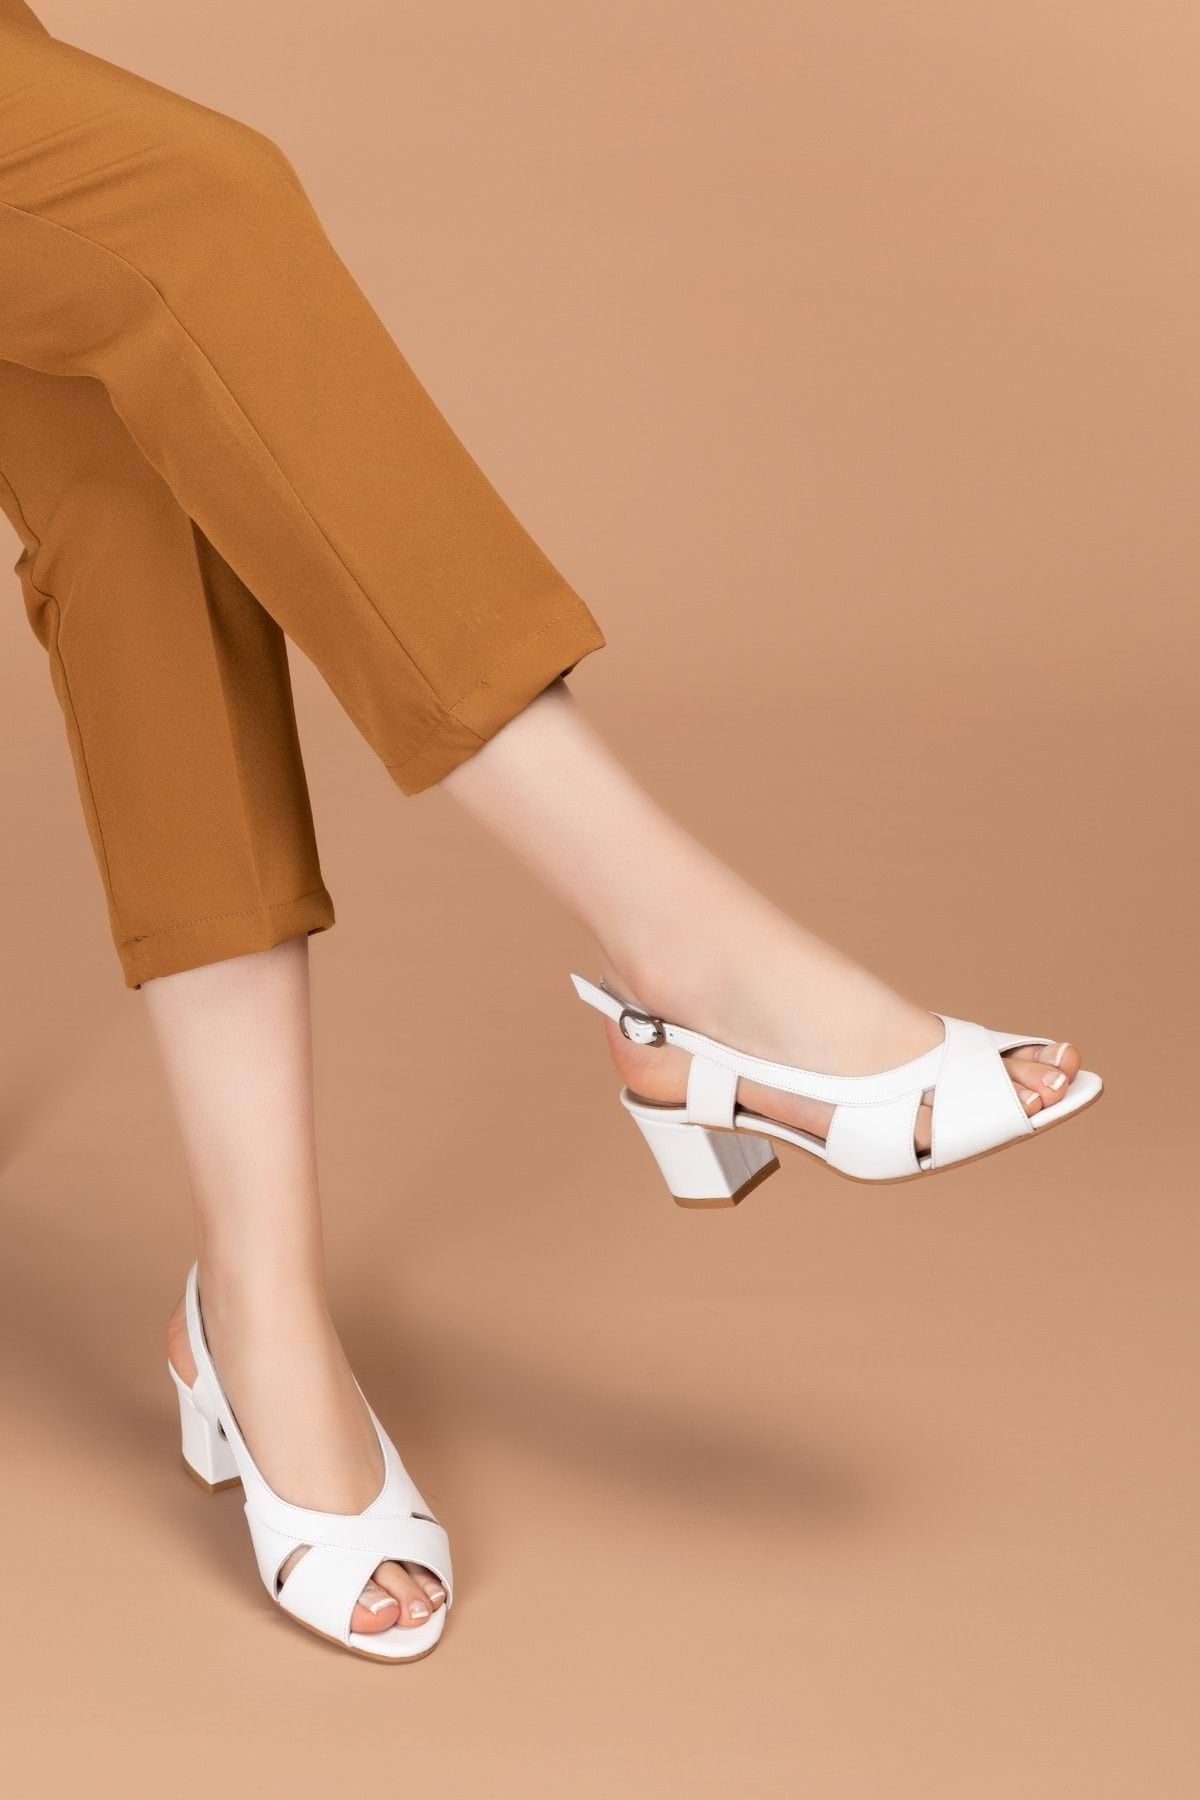 Gondol Kadın Hakiki Deri Klasik Topuklu Ayakkabı Şhn.729 - Beyaz - 39